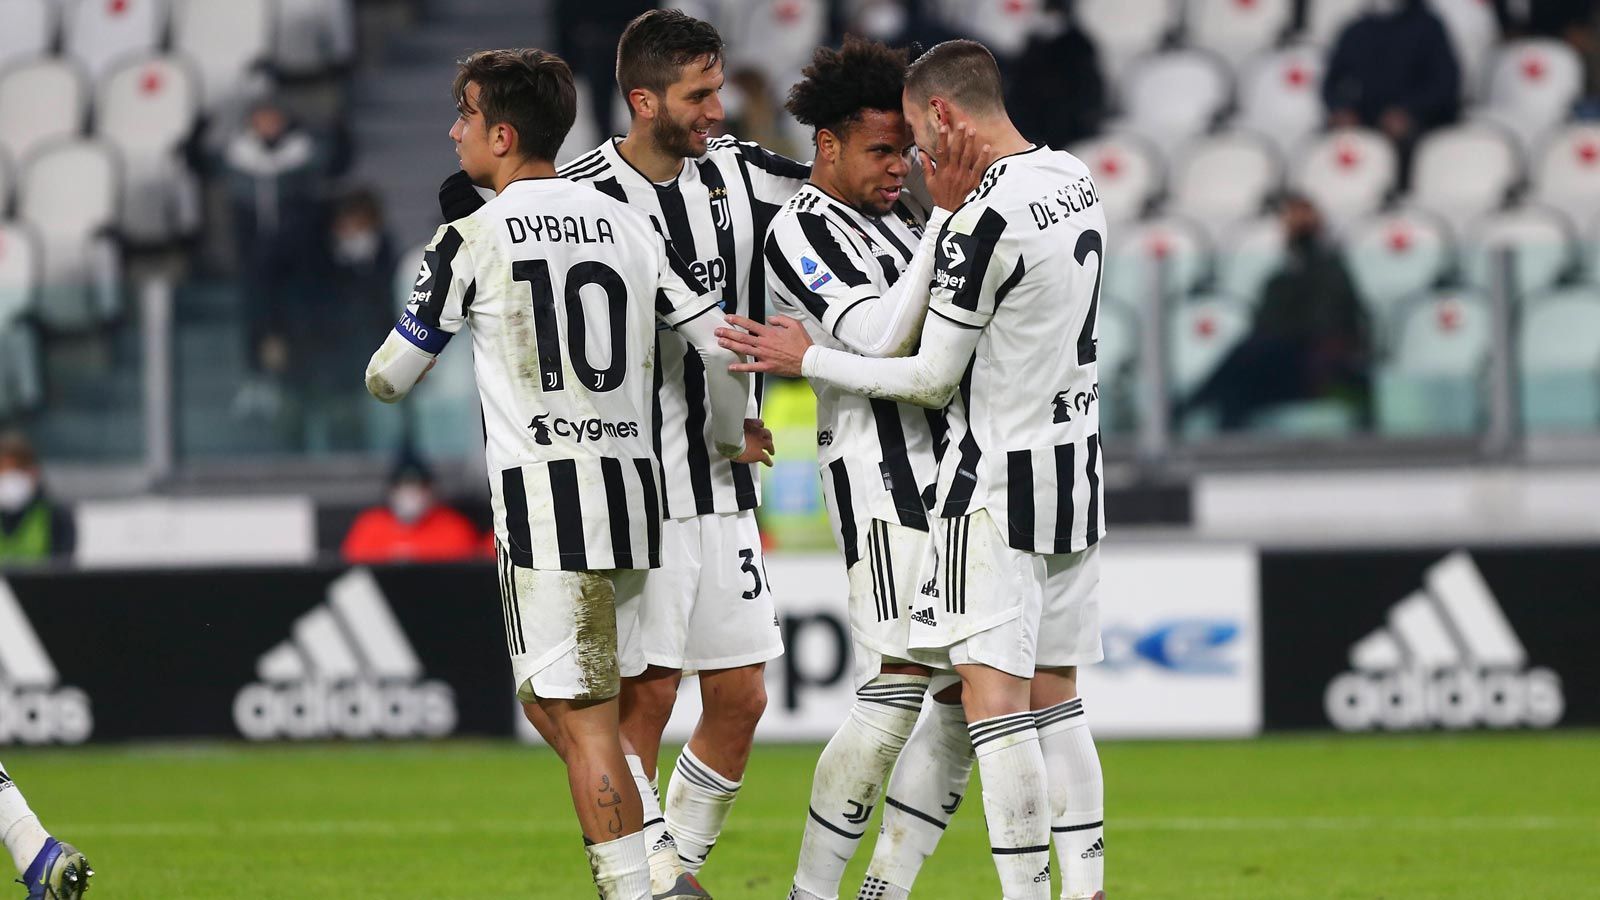 
                <strong>5. Platz: Juventus Turin</strong><br>
                Verkaufte Trikots: 1,42 Millionen
              